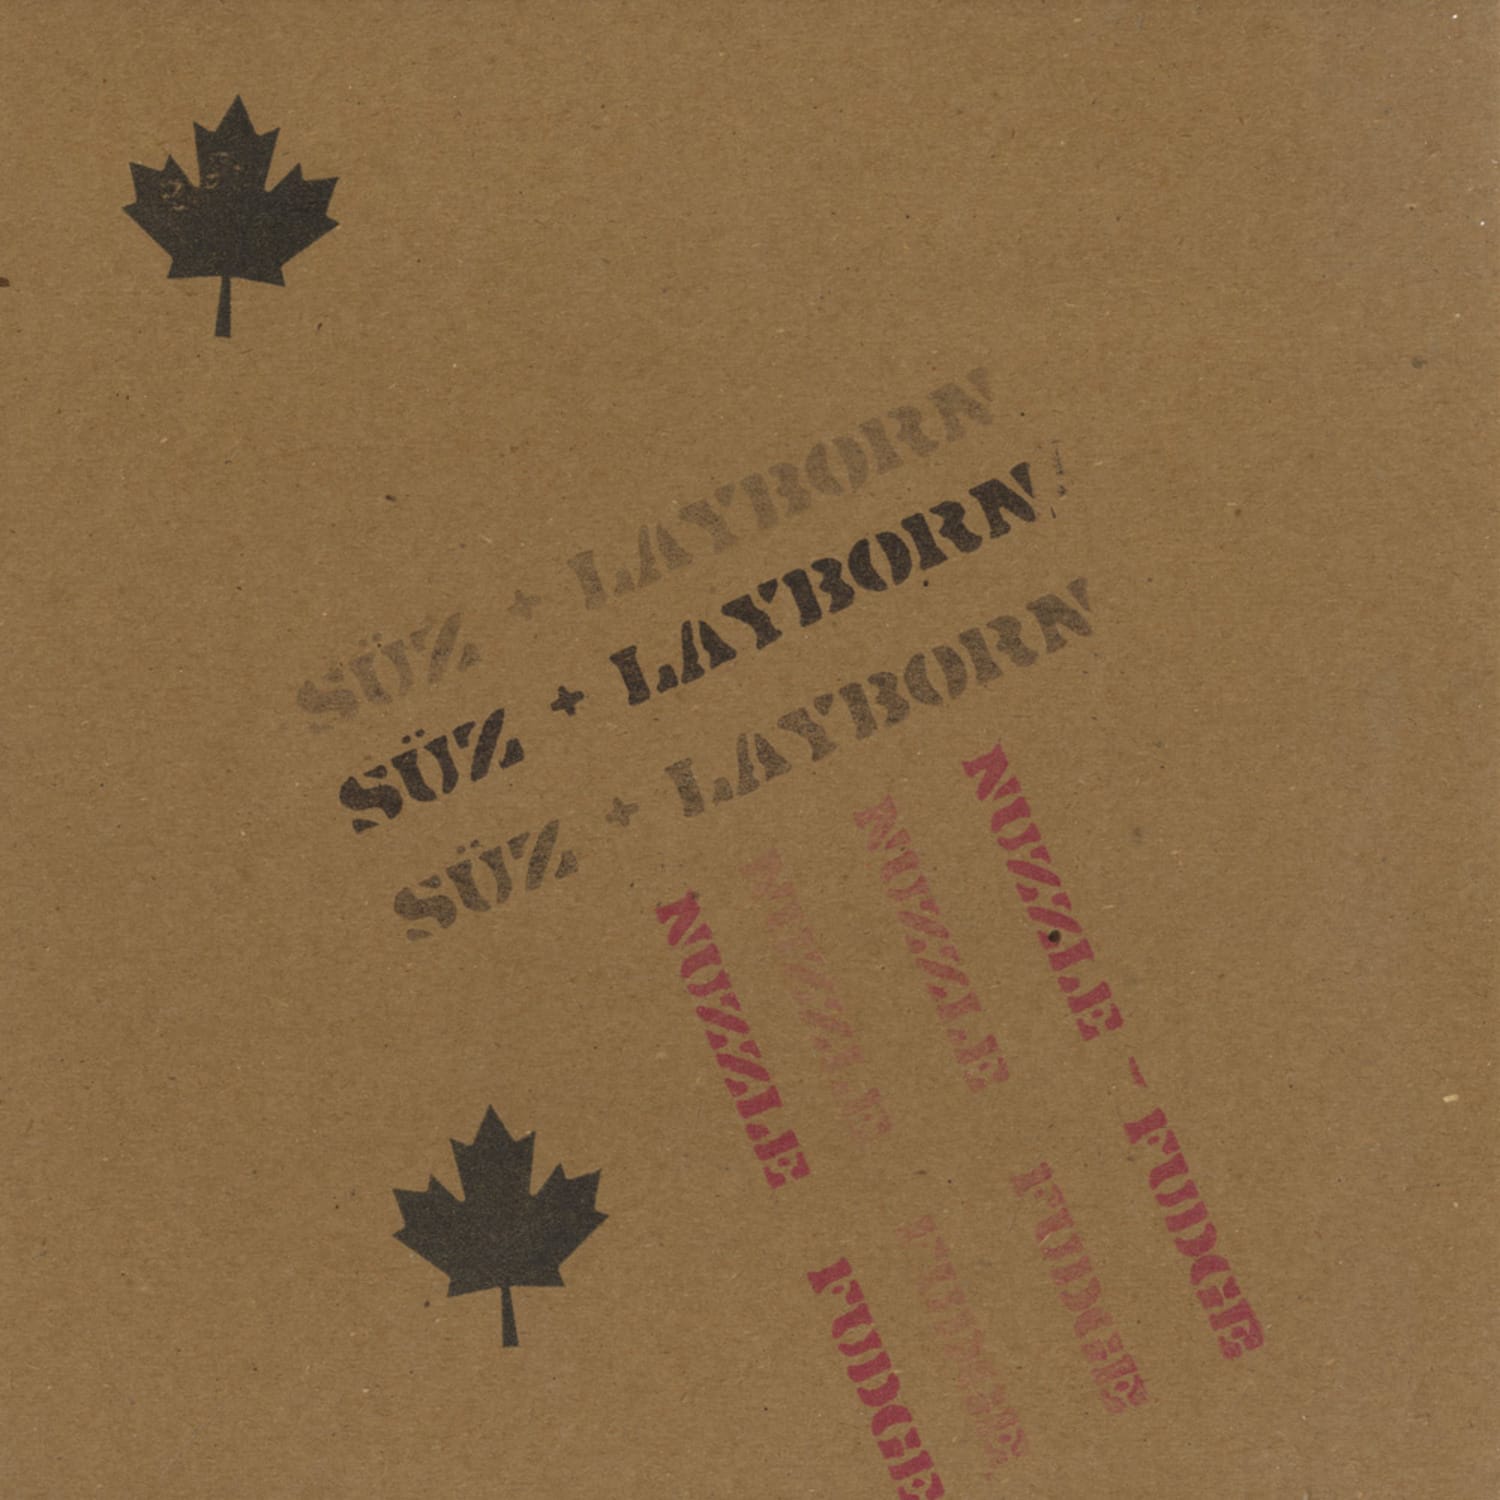 Suz & Layborn - NUZZLE FUDGE EP 